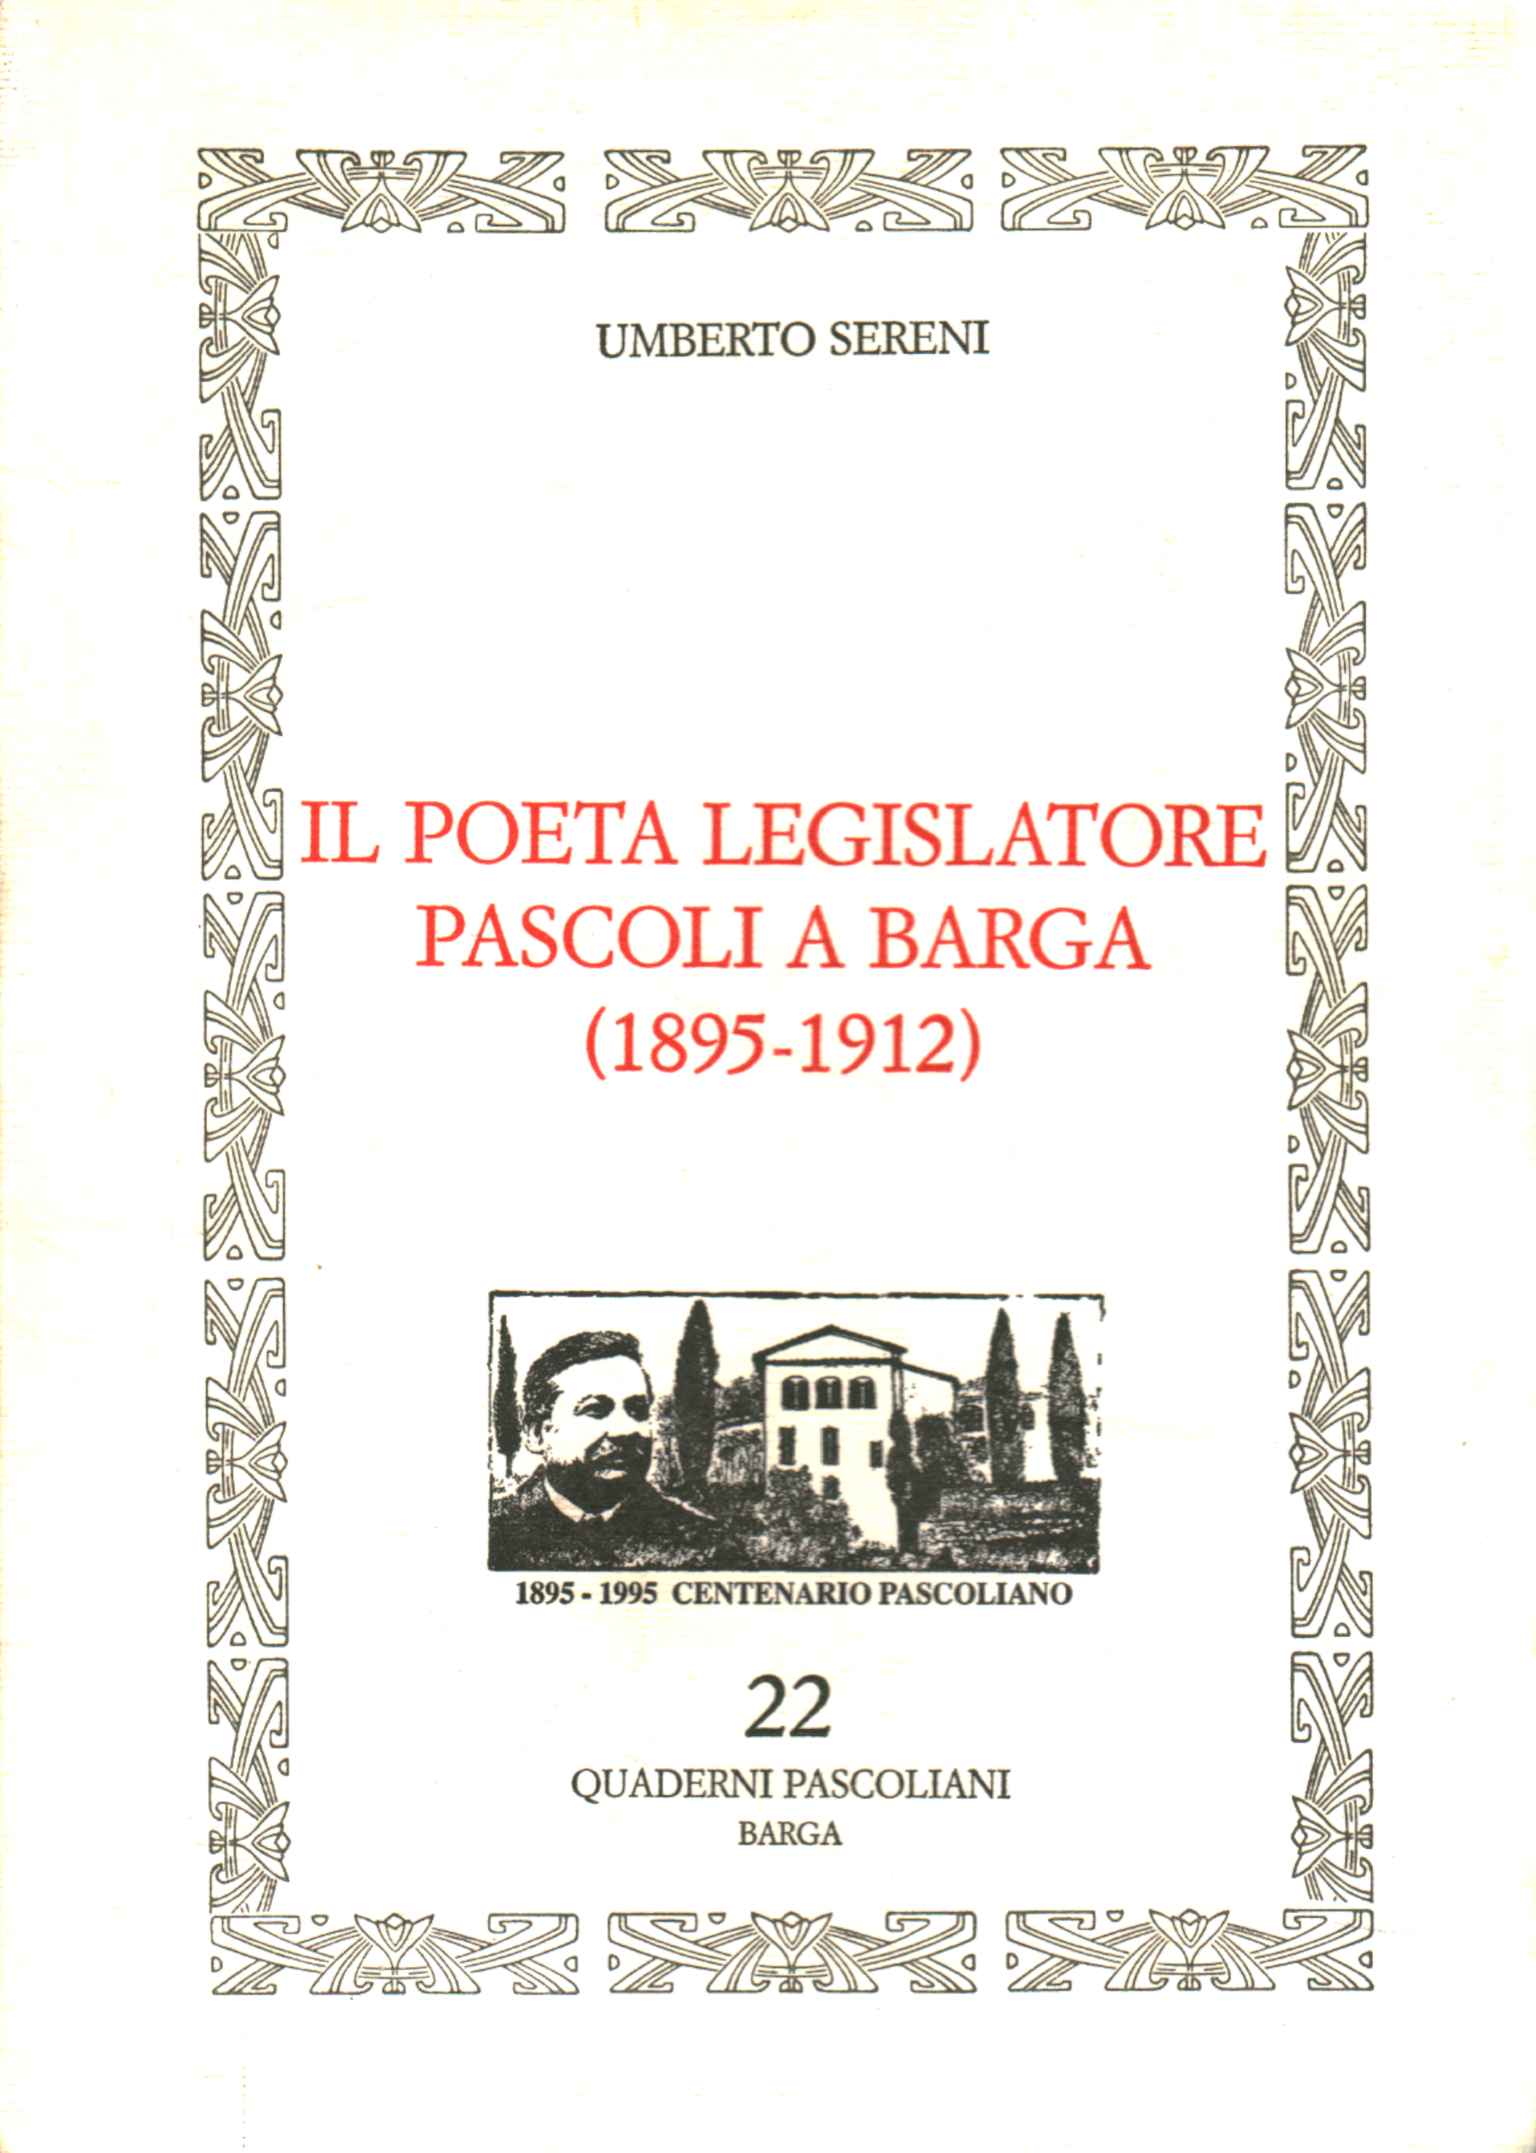 Der Dichter Gesetzgeber Pascoli in Barga (